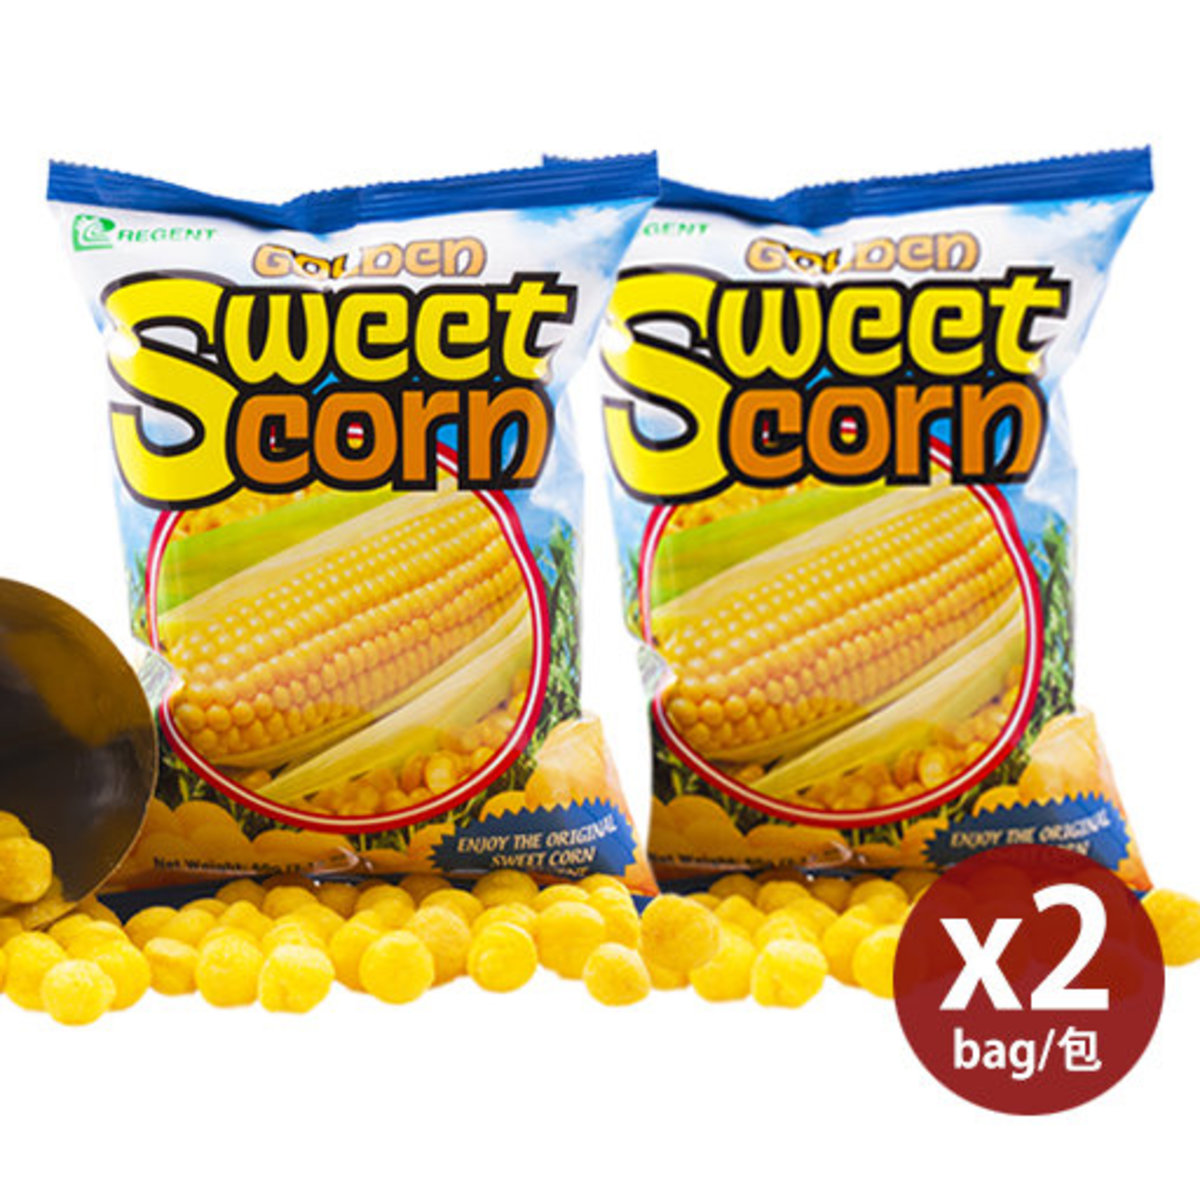 粟米濃湯小食 60g (2包) / Golden Sweet Corn